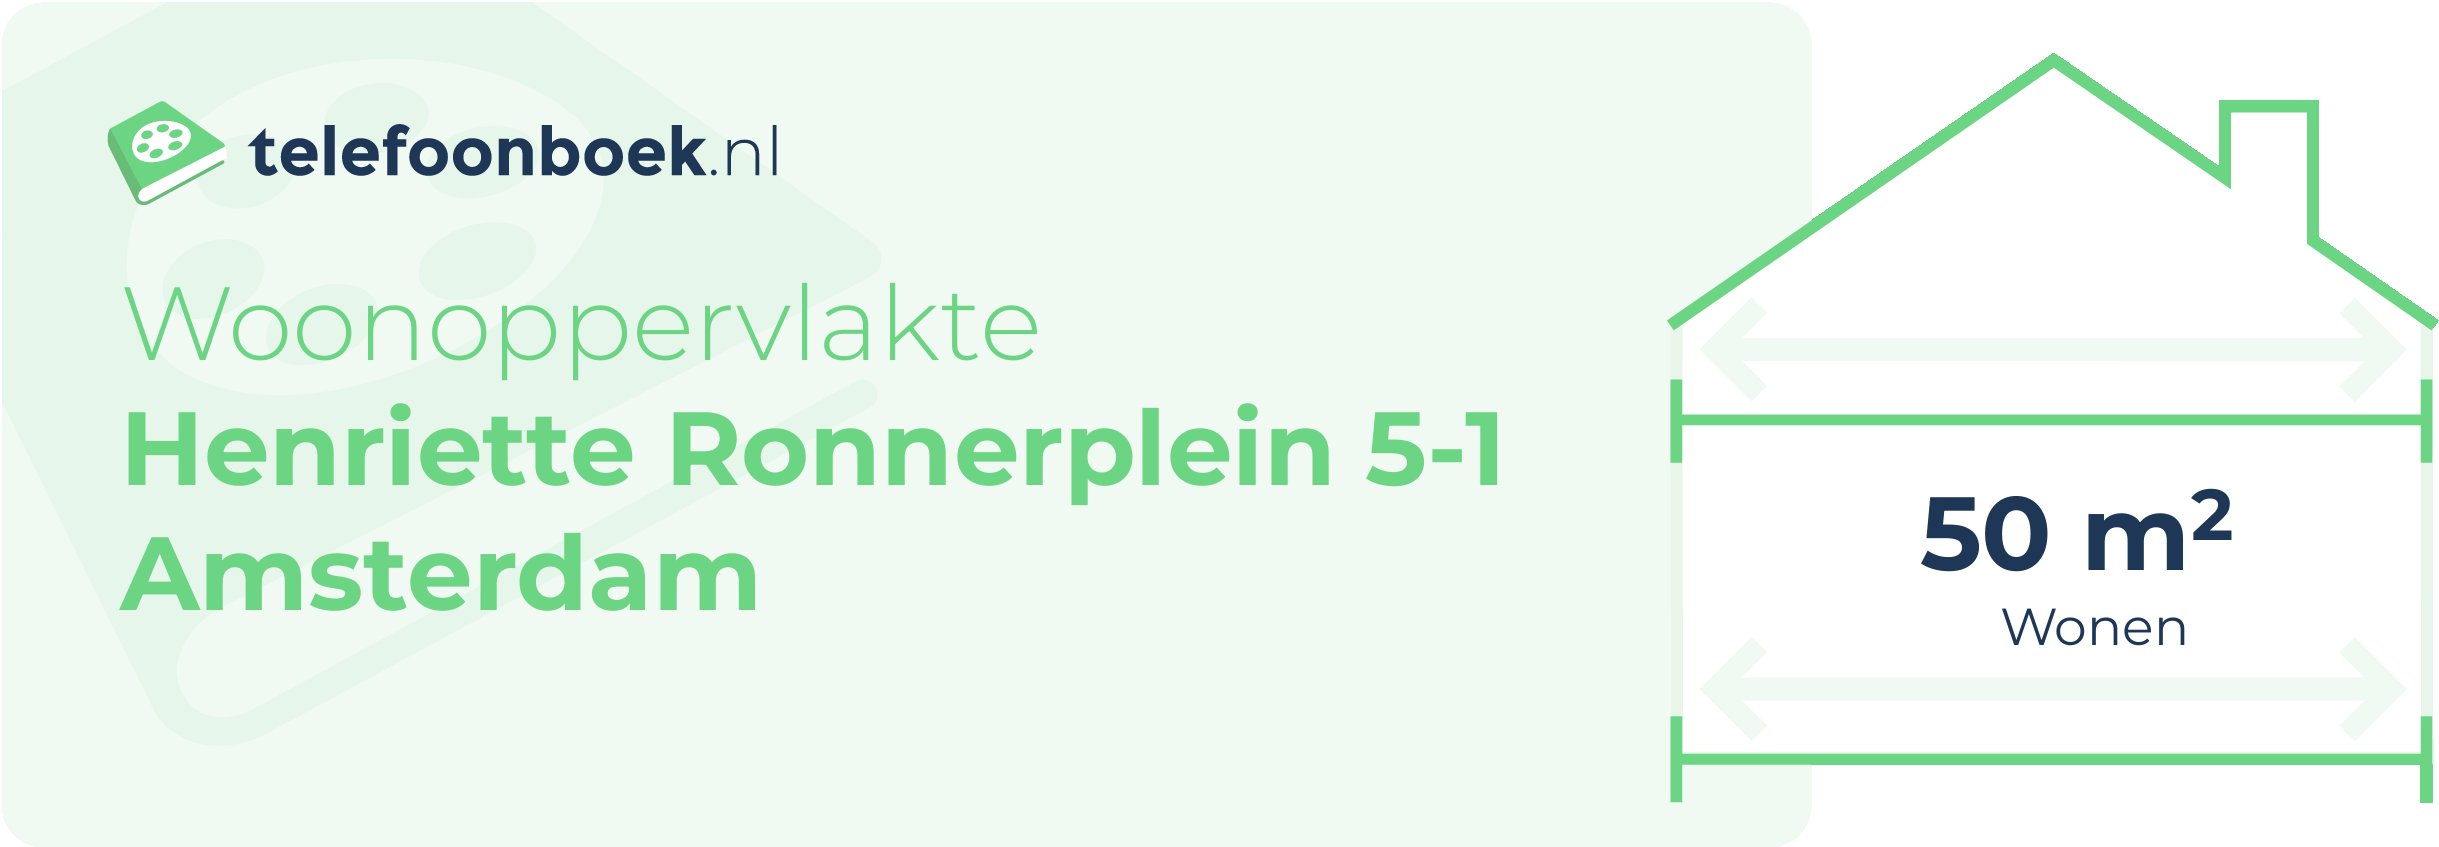 Woonoppervlakte Henriette Ronnerplein 5-1 Amsterdam